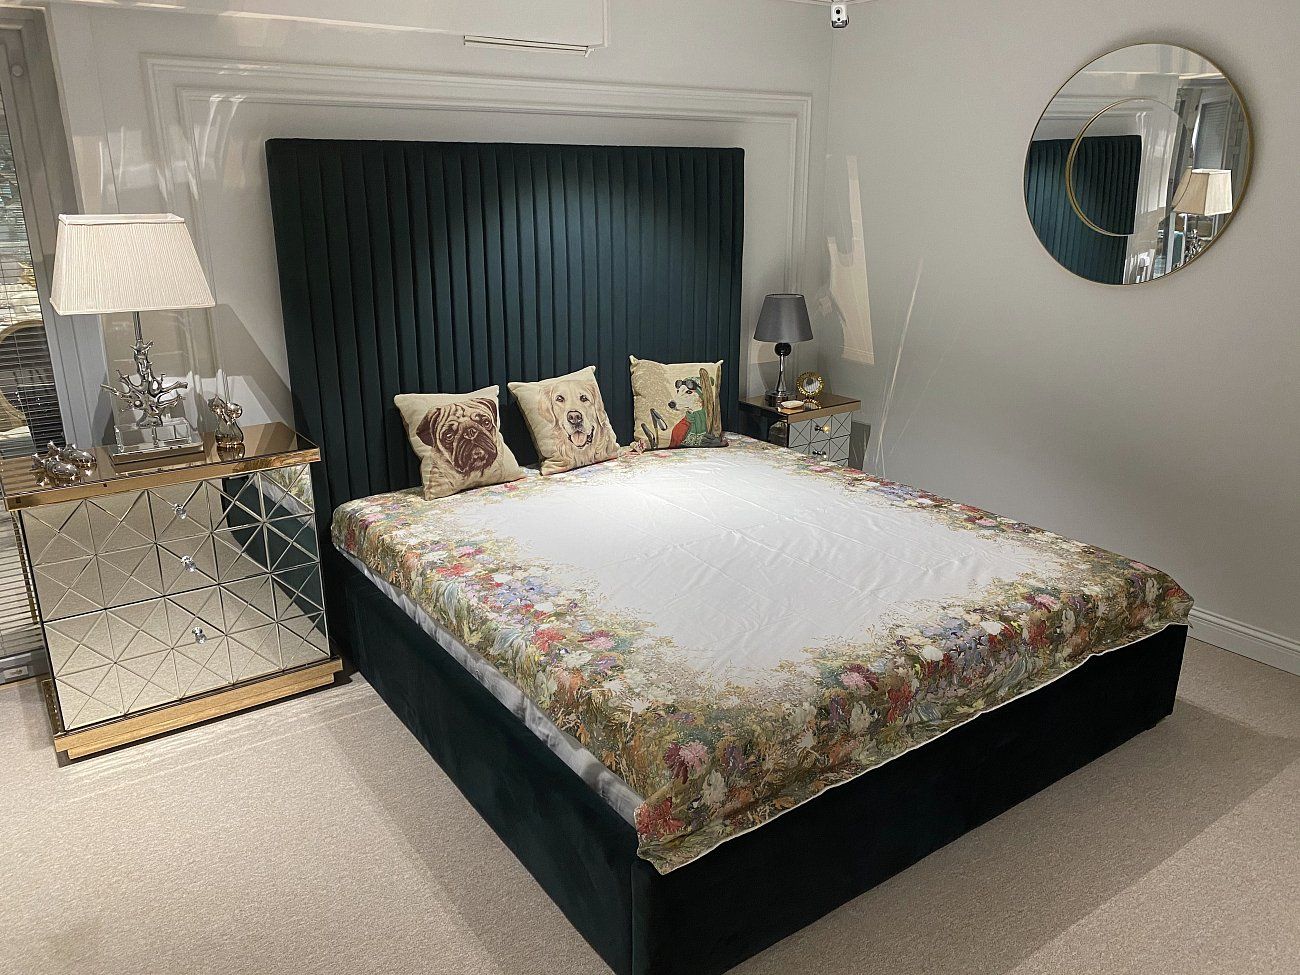 Double bed 180x200 cm beige Mora